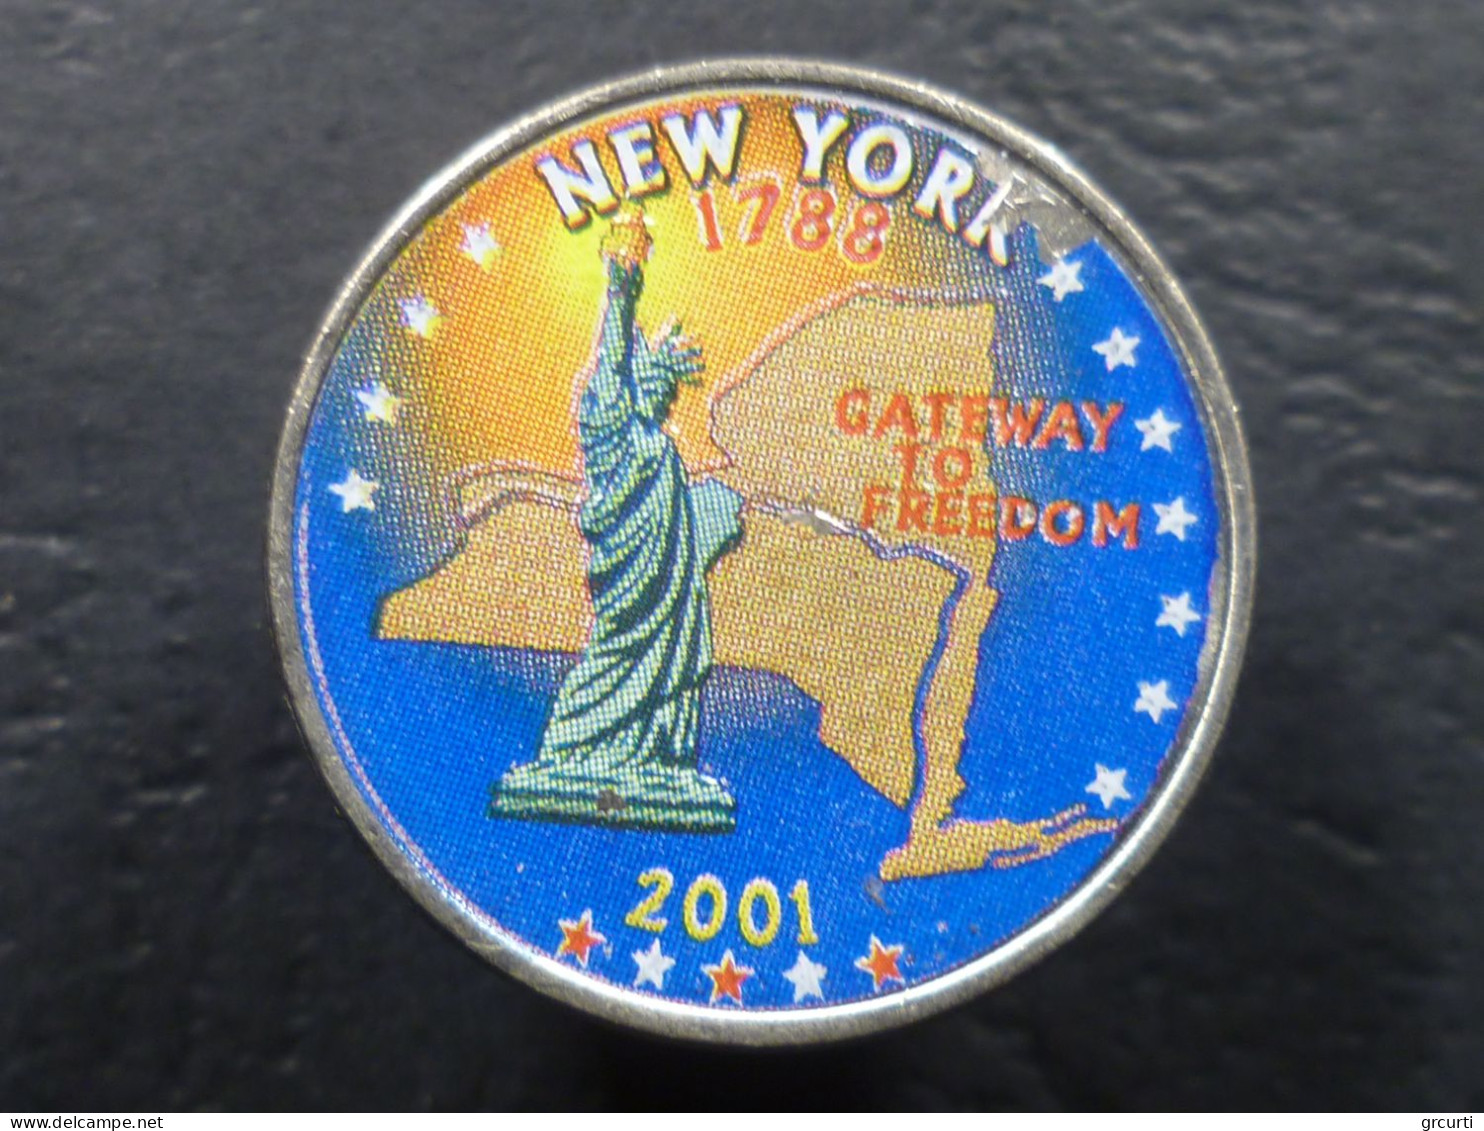 Stati Uniti - 25 Cents 2000-2001 - Lotto di 7 monete colorate